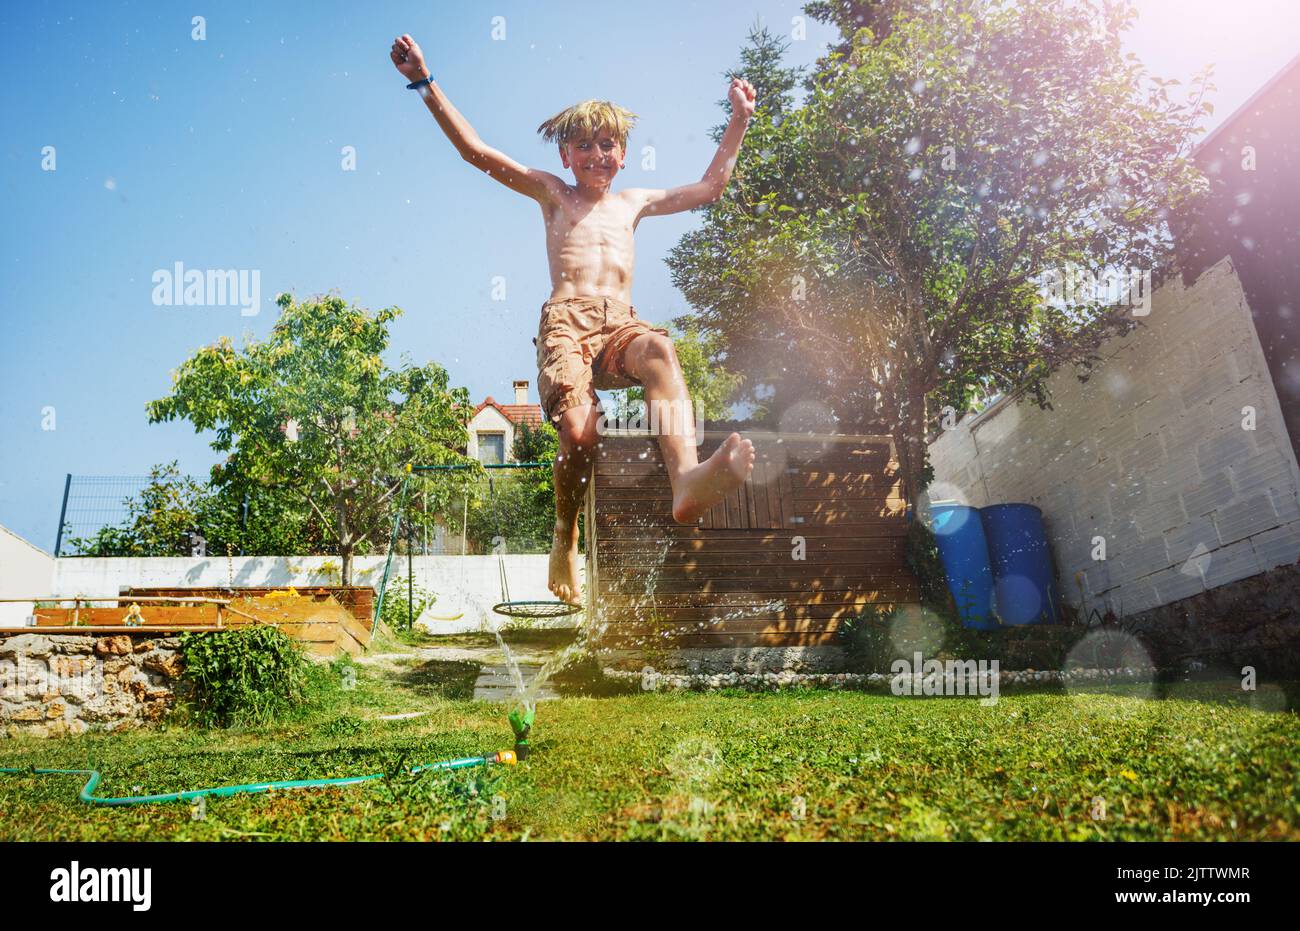 Bonhomme sautez au-dessus de l'arroseur d'eau avec les mains vers le haut sur la pelouse du jardin Banque D'Images